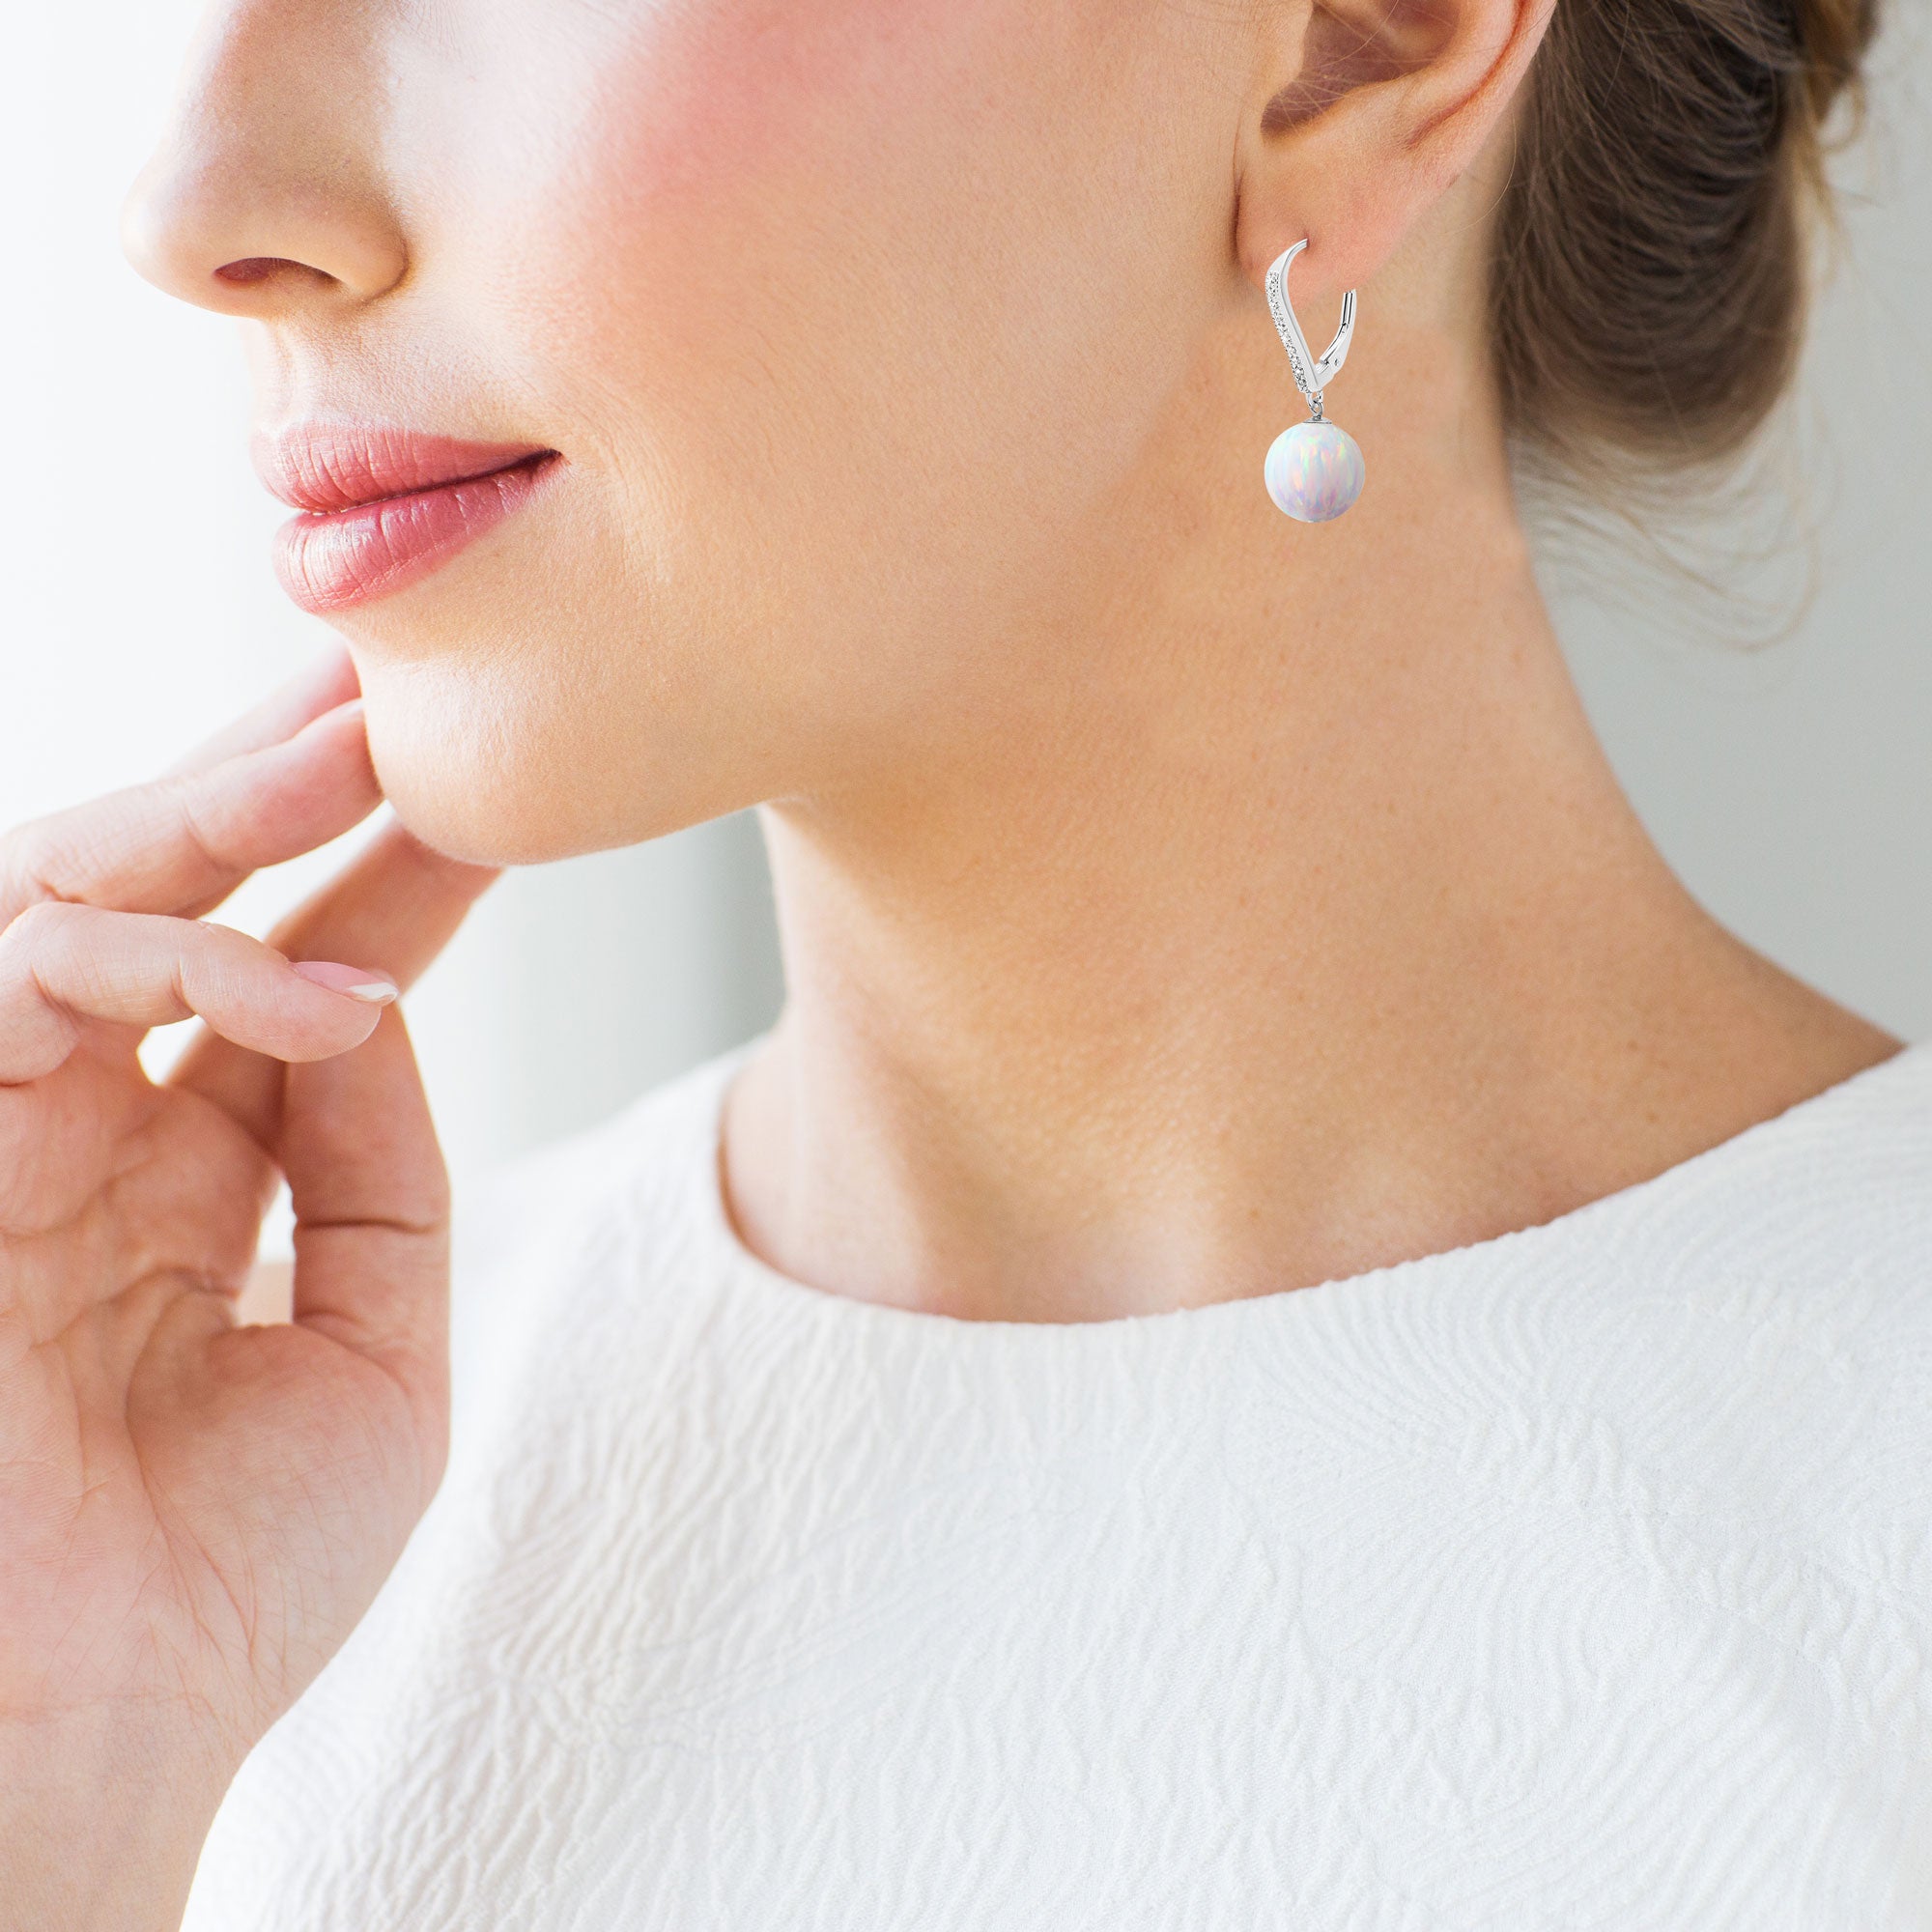 Hypoallergenic Gemstone Stud Earrings for Women Girls 925 Sterling Silver  Cute Cat' Eye Stone Pink Earrings Studs for Sensitive Ears. - Walmart.com